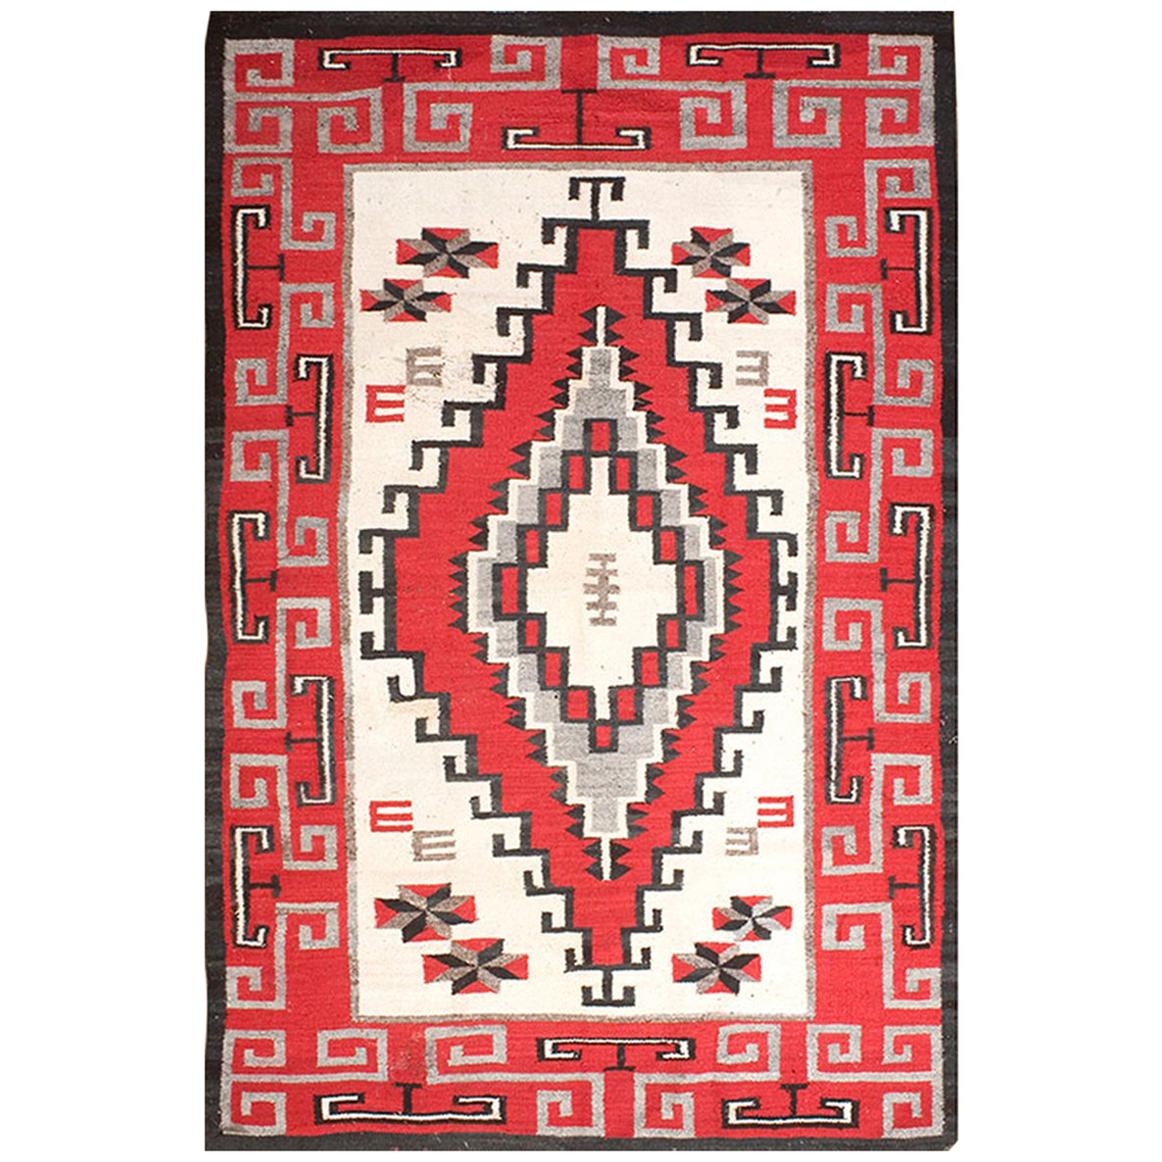 1930s American Navajo Ganado Carpet Carpet ( 5' x 7'5" - 152 x 226 ) For Sale